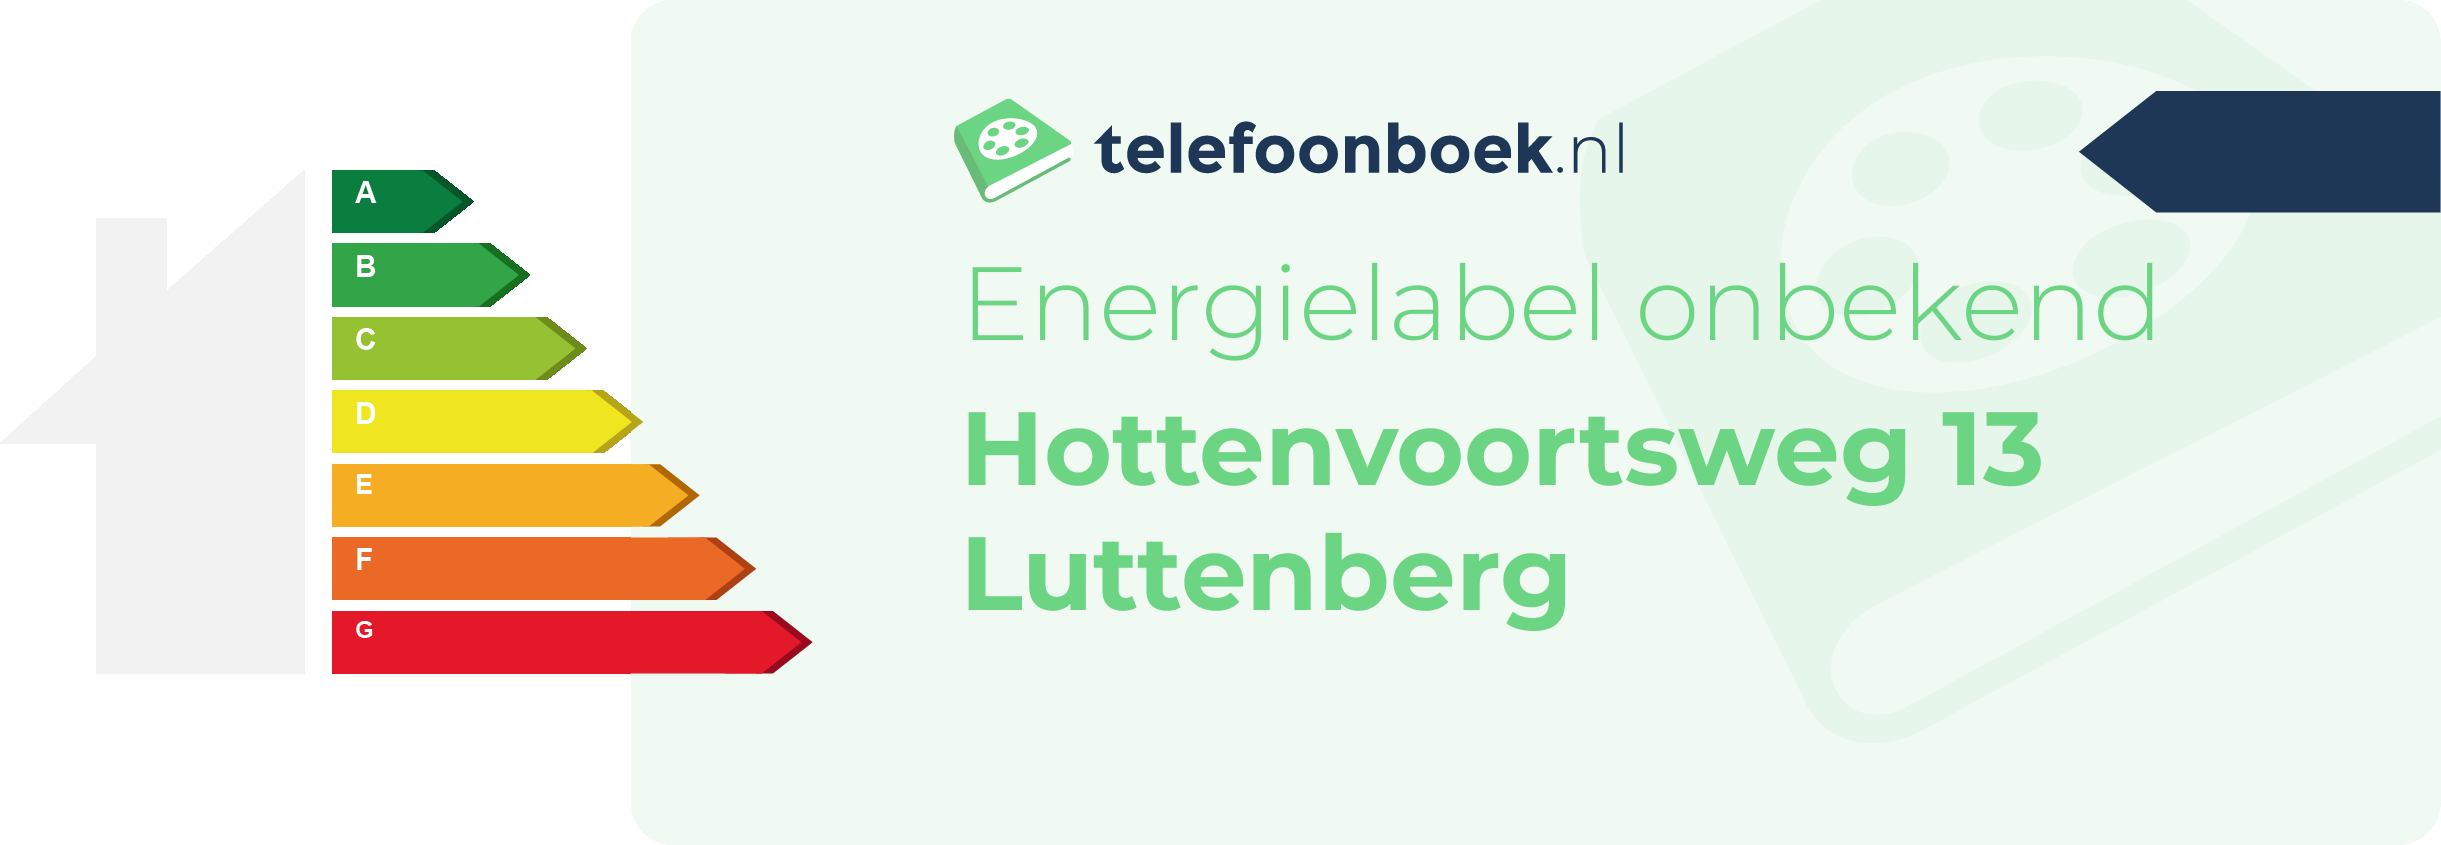 Energielabel Hottenvoortsweg 13 Luttenberg